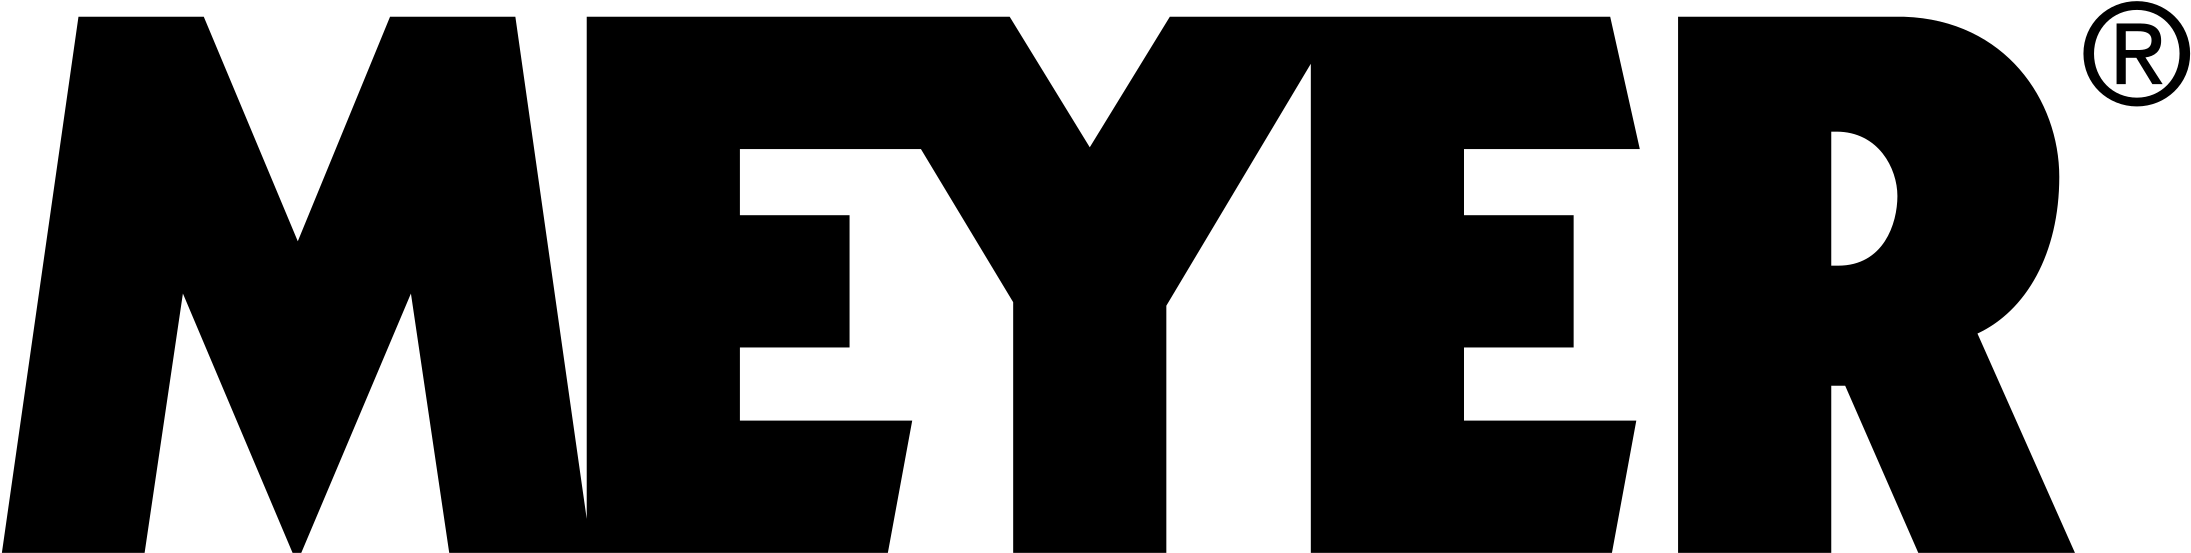 Логотип Мужская одежда